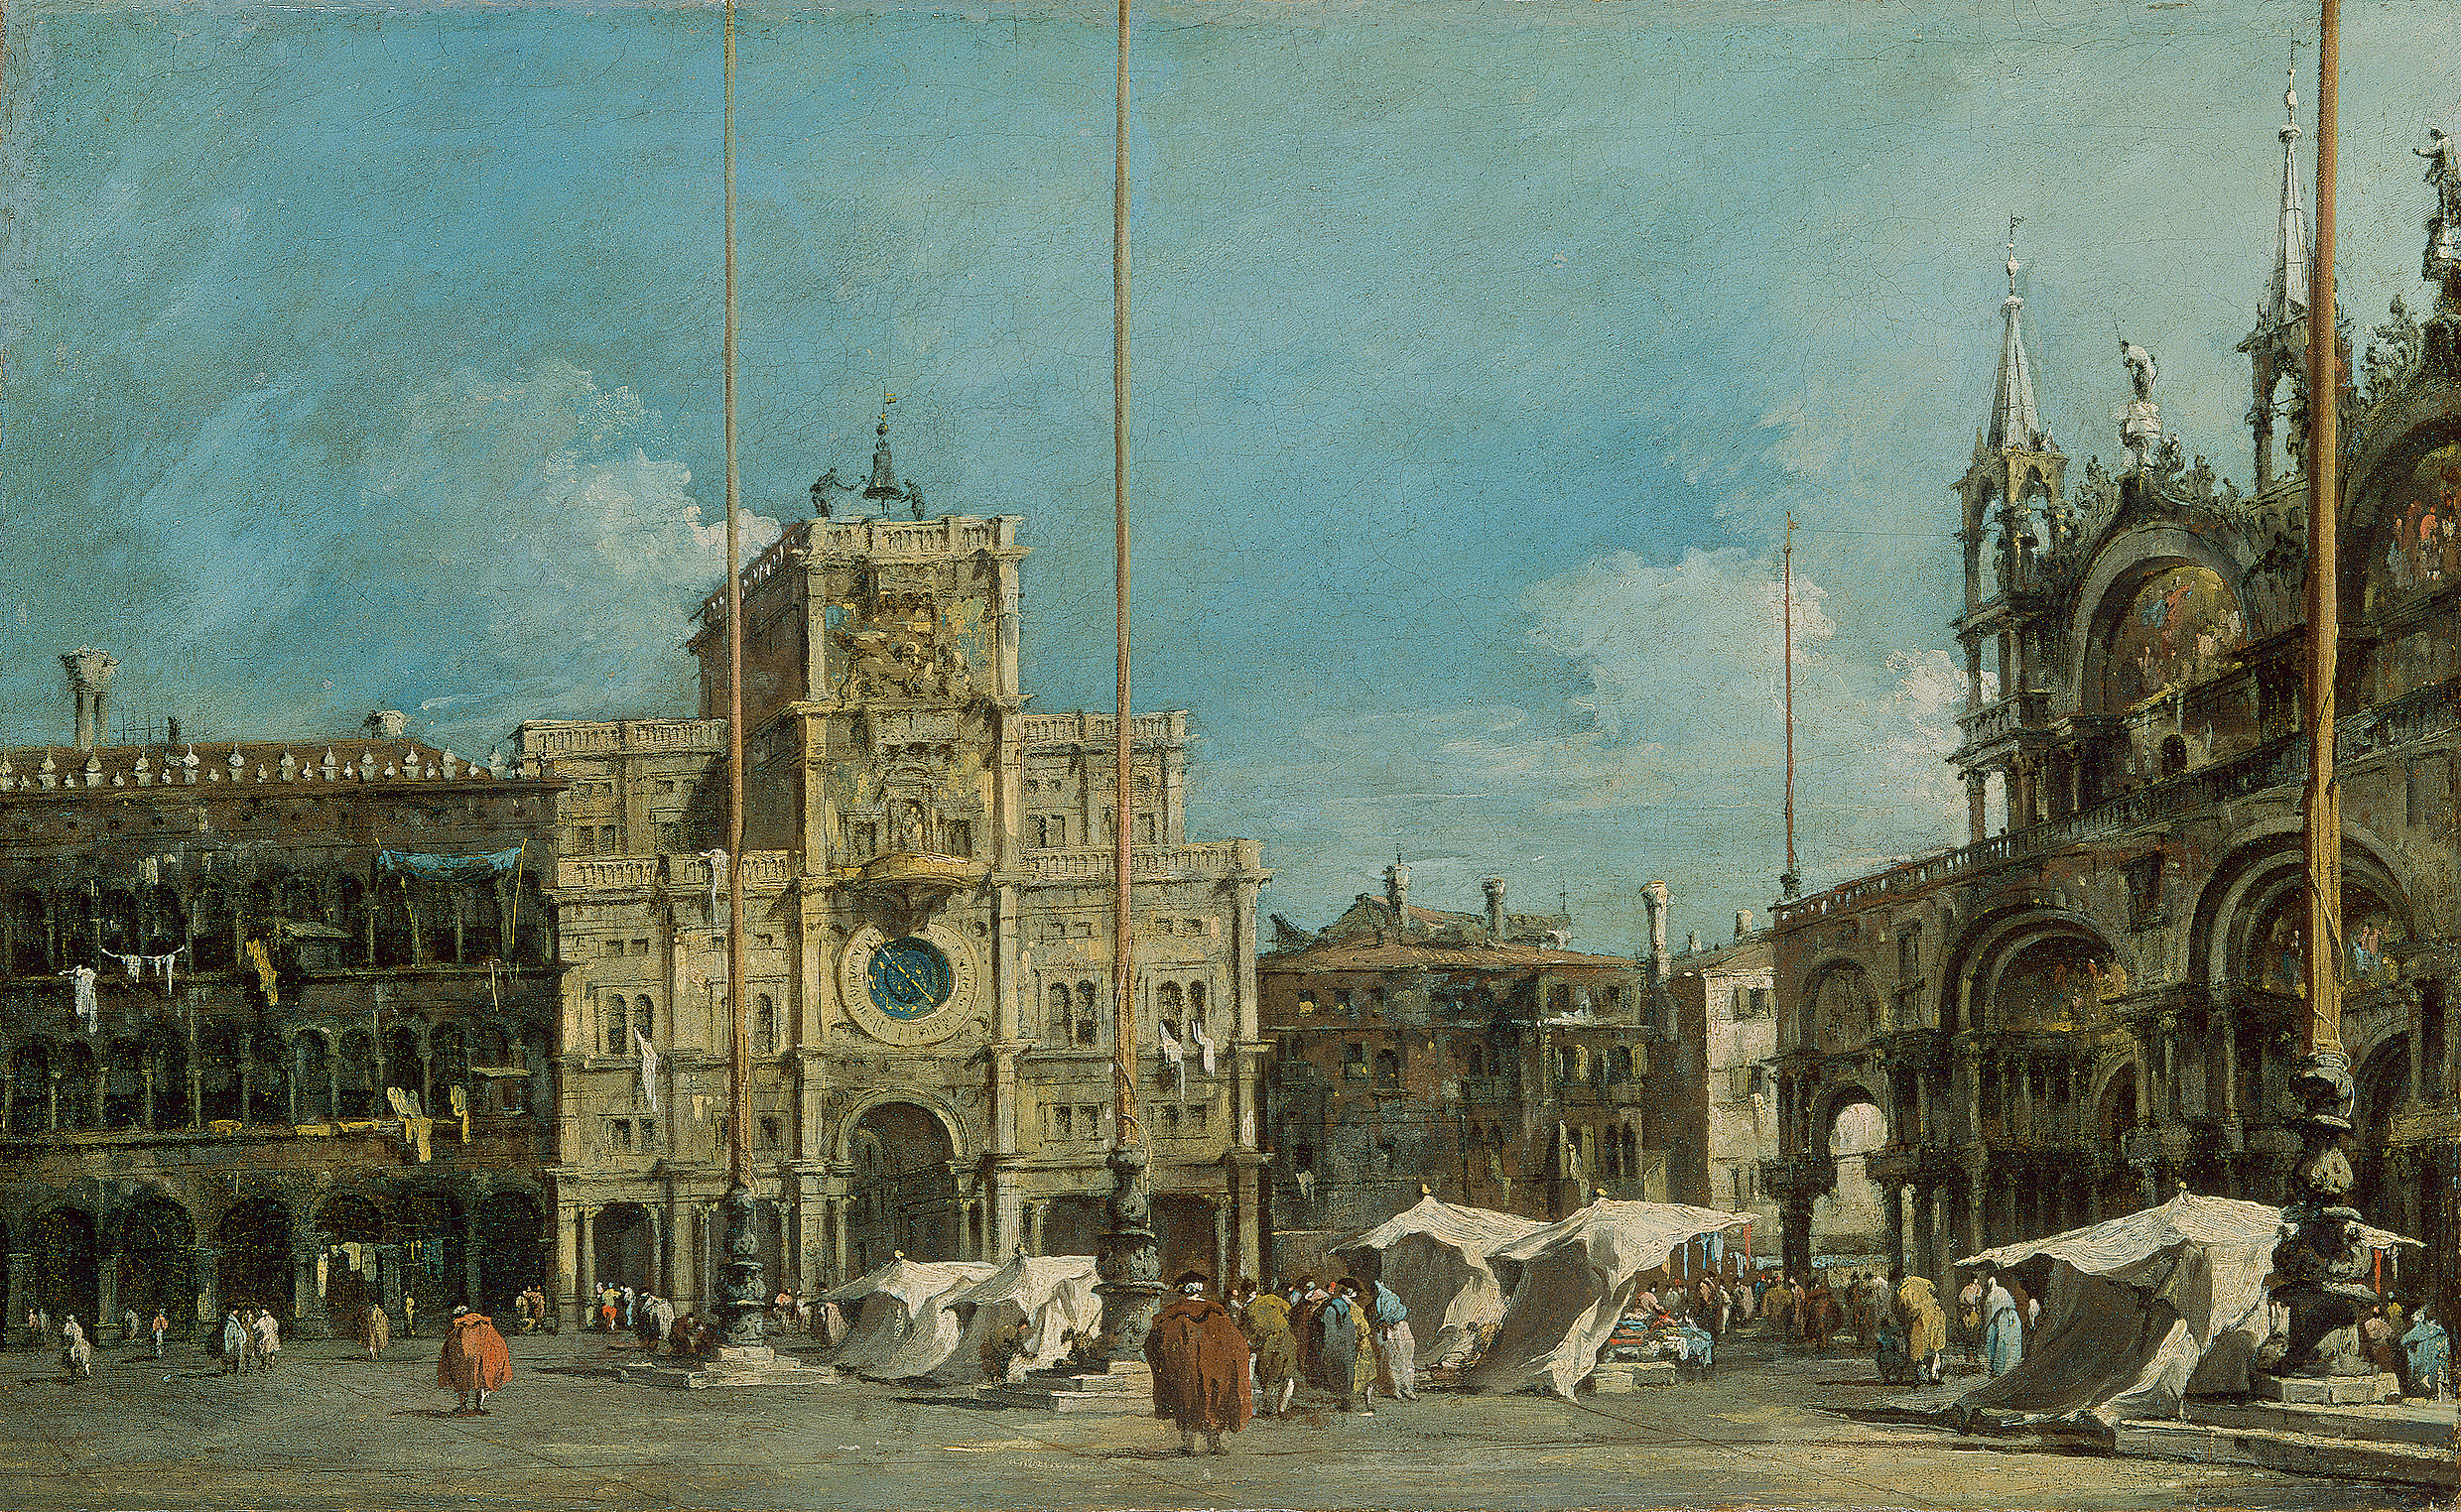 Francesco Guardi, The Torre dell’Orologio in Piazza San Marco